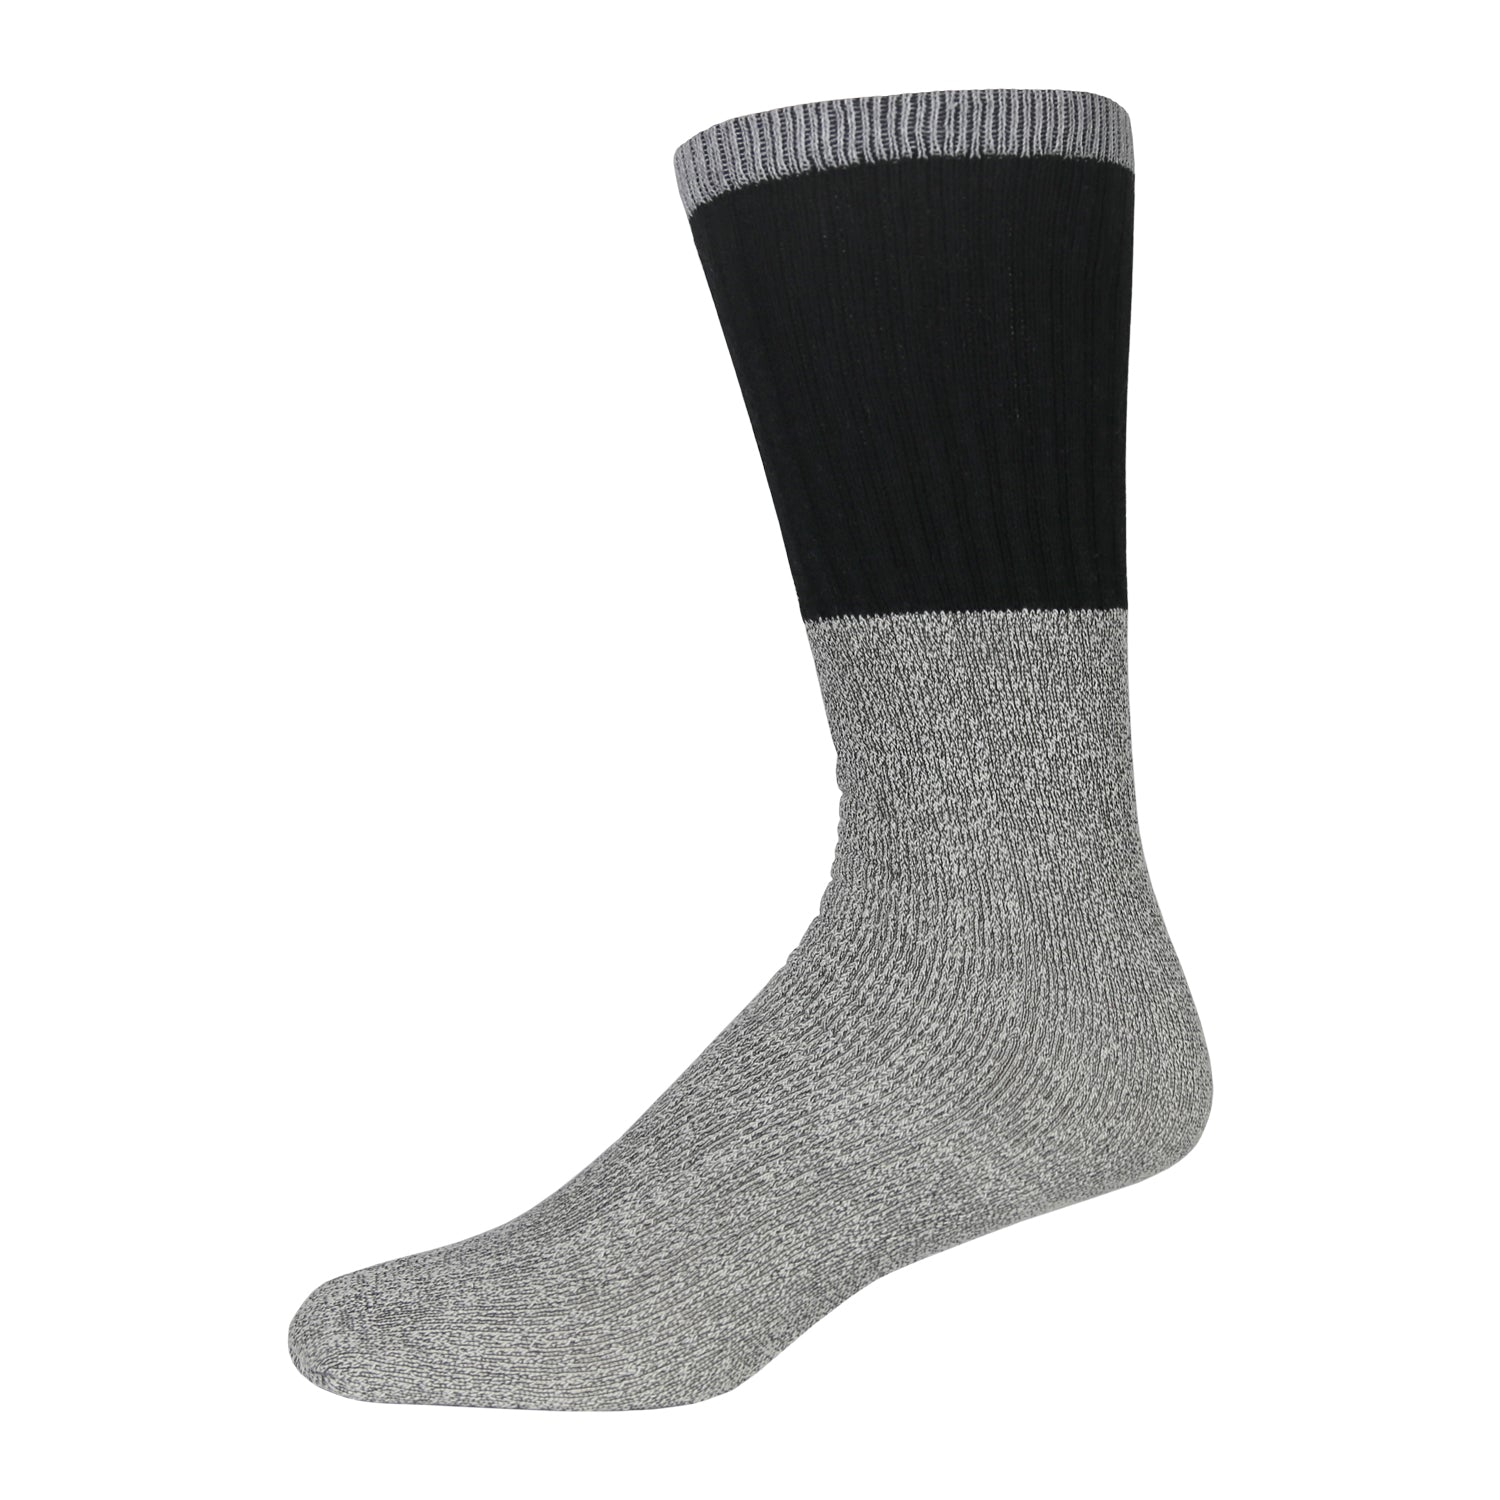 12 Pairs Men's Thermal Winter Sock - Womens Thermal Socks - at